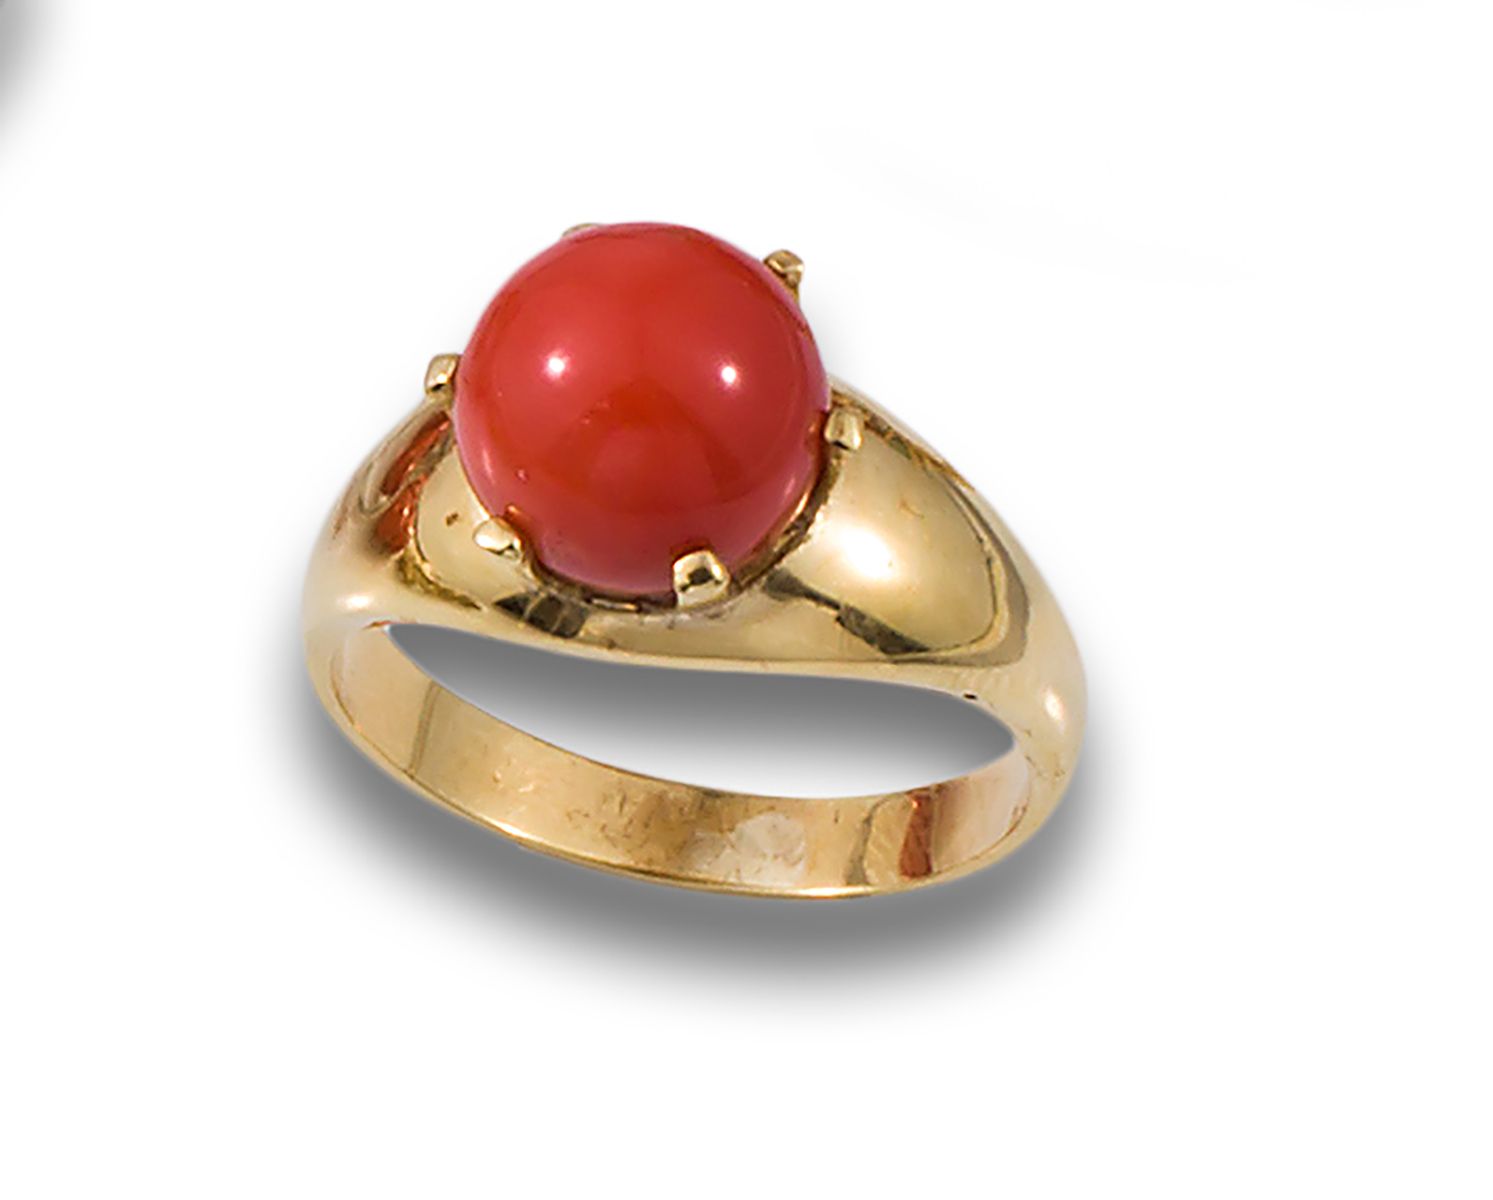 RING, 70'S, YELLOW GOLD AND CORAL 戒指，20世纪70年代，由18K黄金制成，中心为爪式镶嵌的珊瑚。